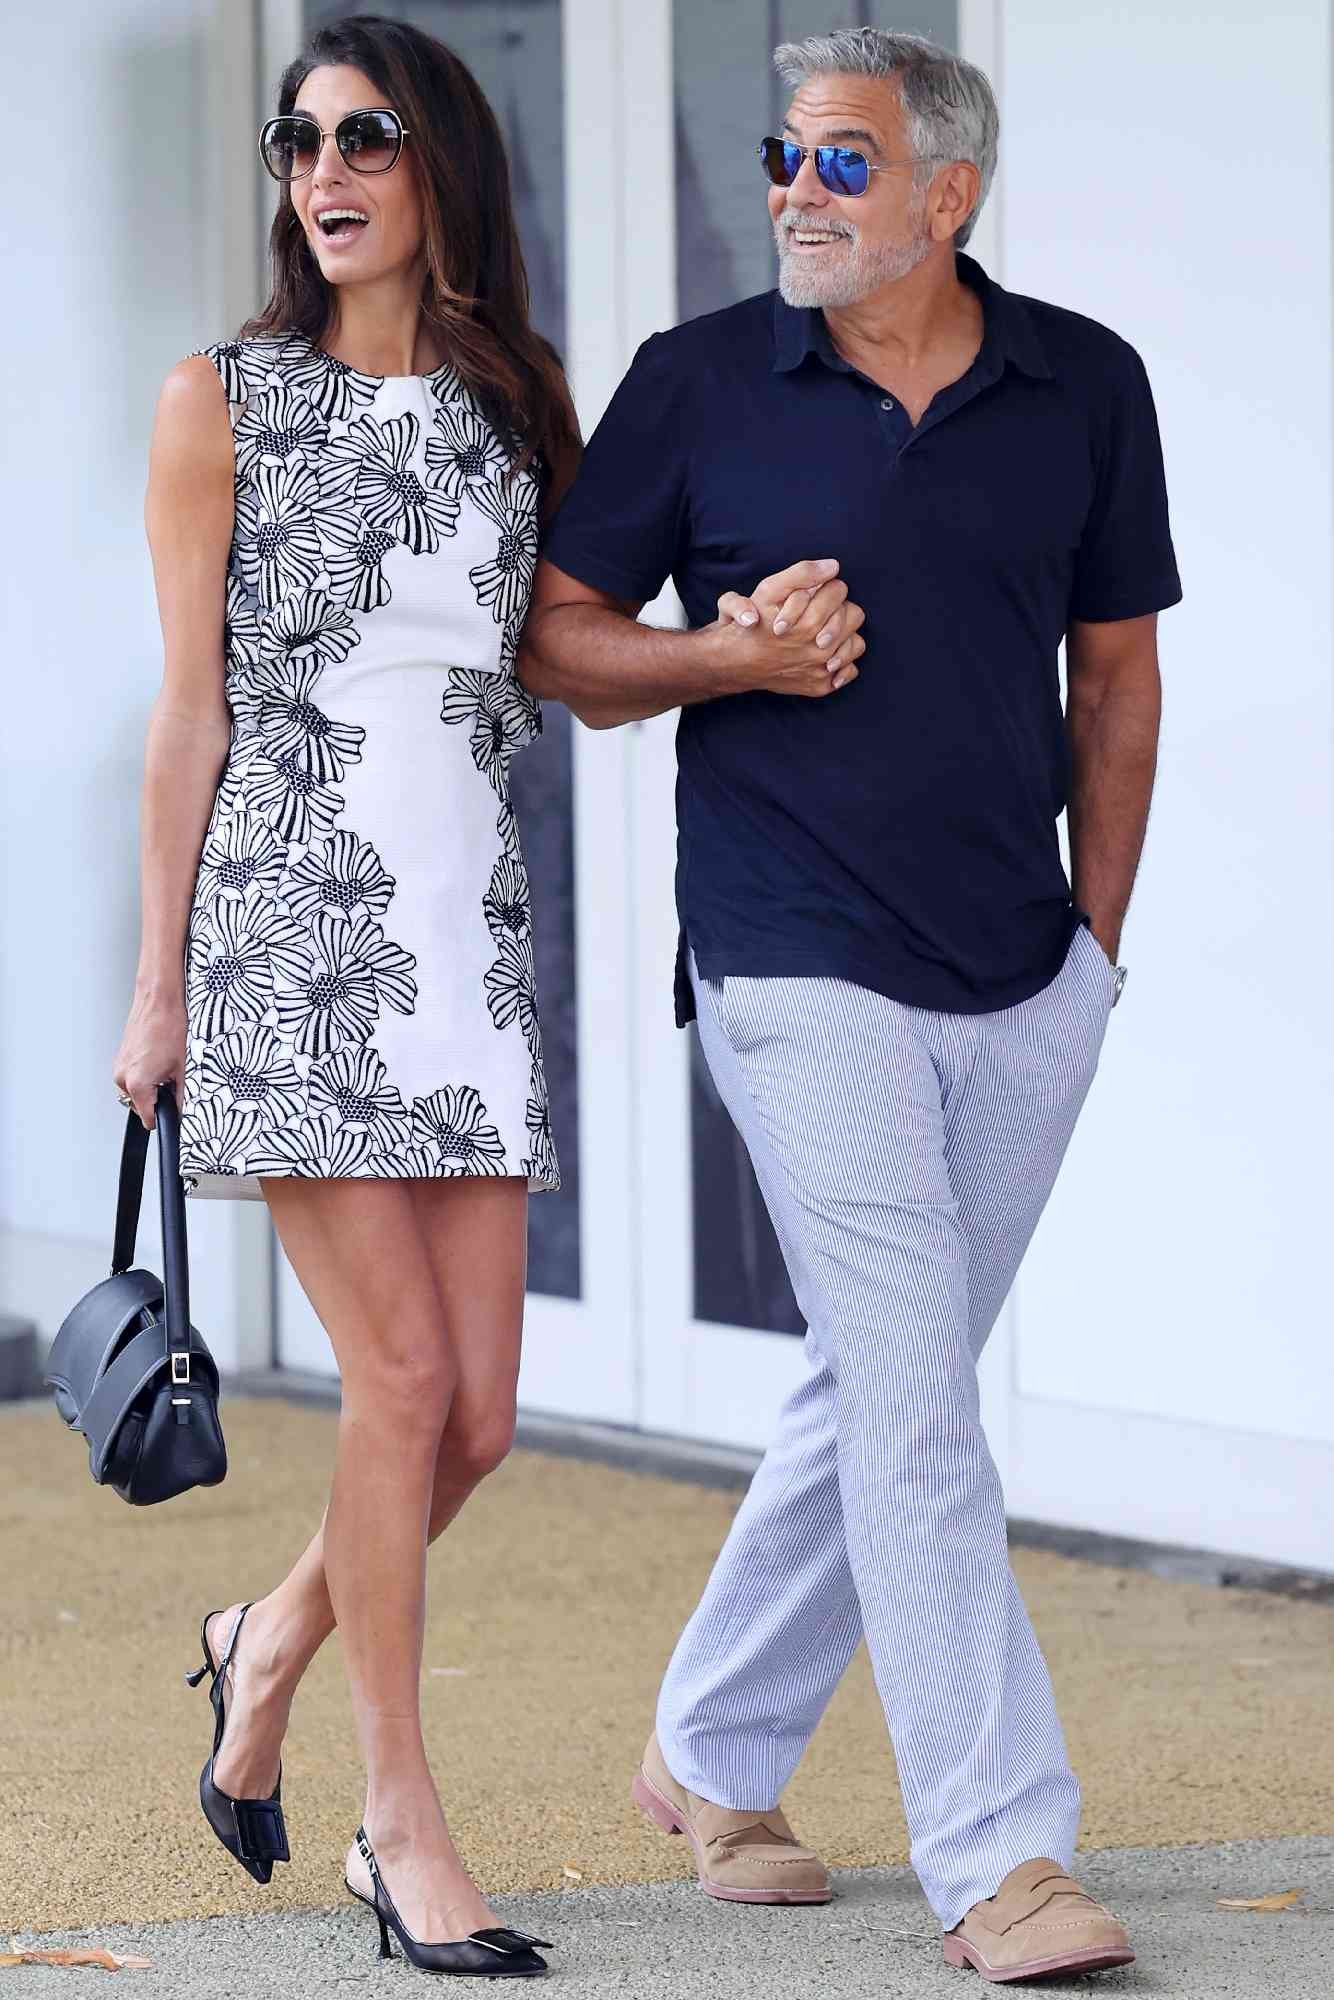 Джордж Клуни с супругой в мини-платье попали в объективы фотографов в Венеции